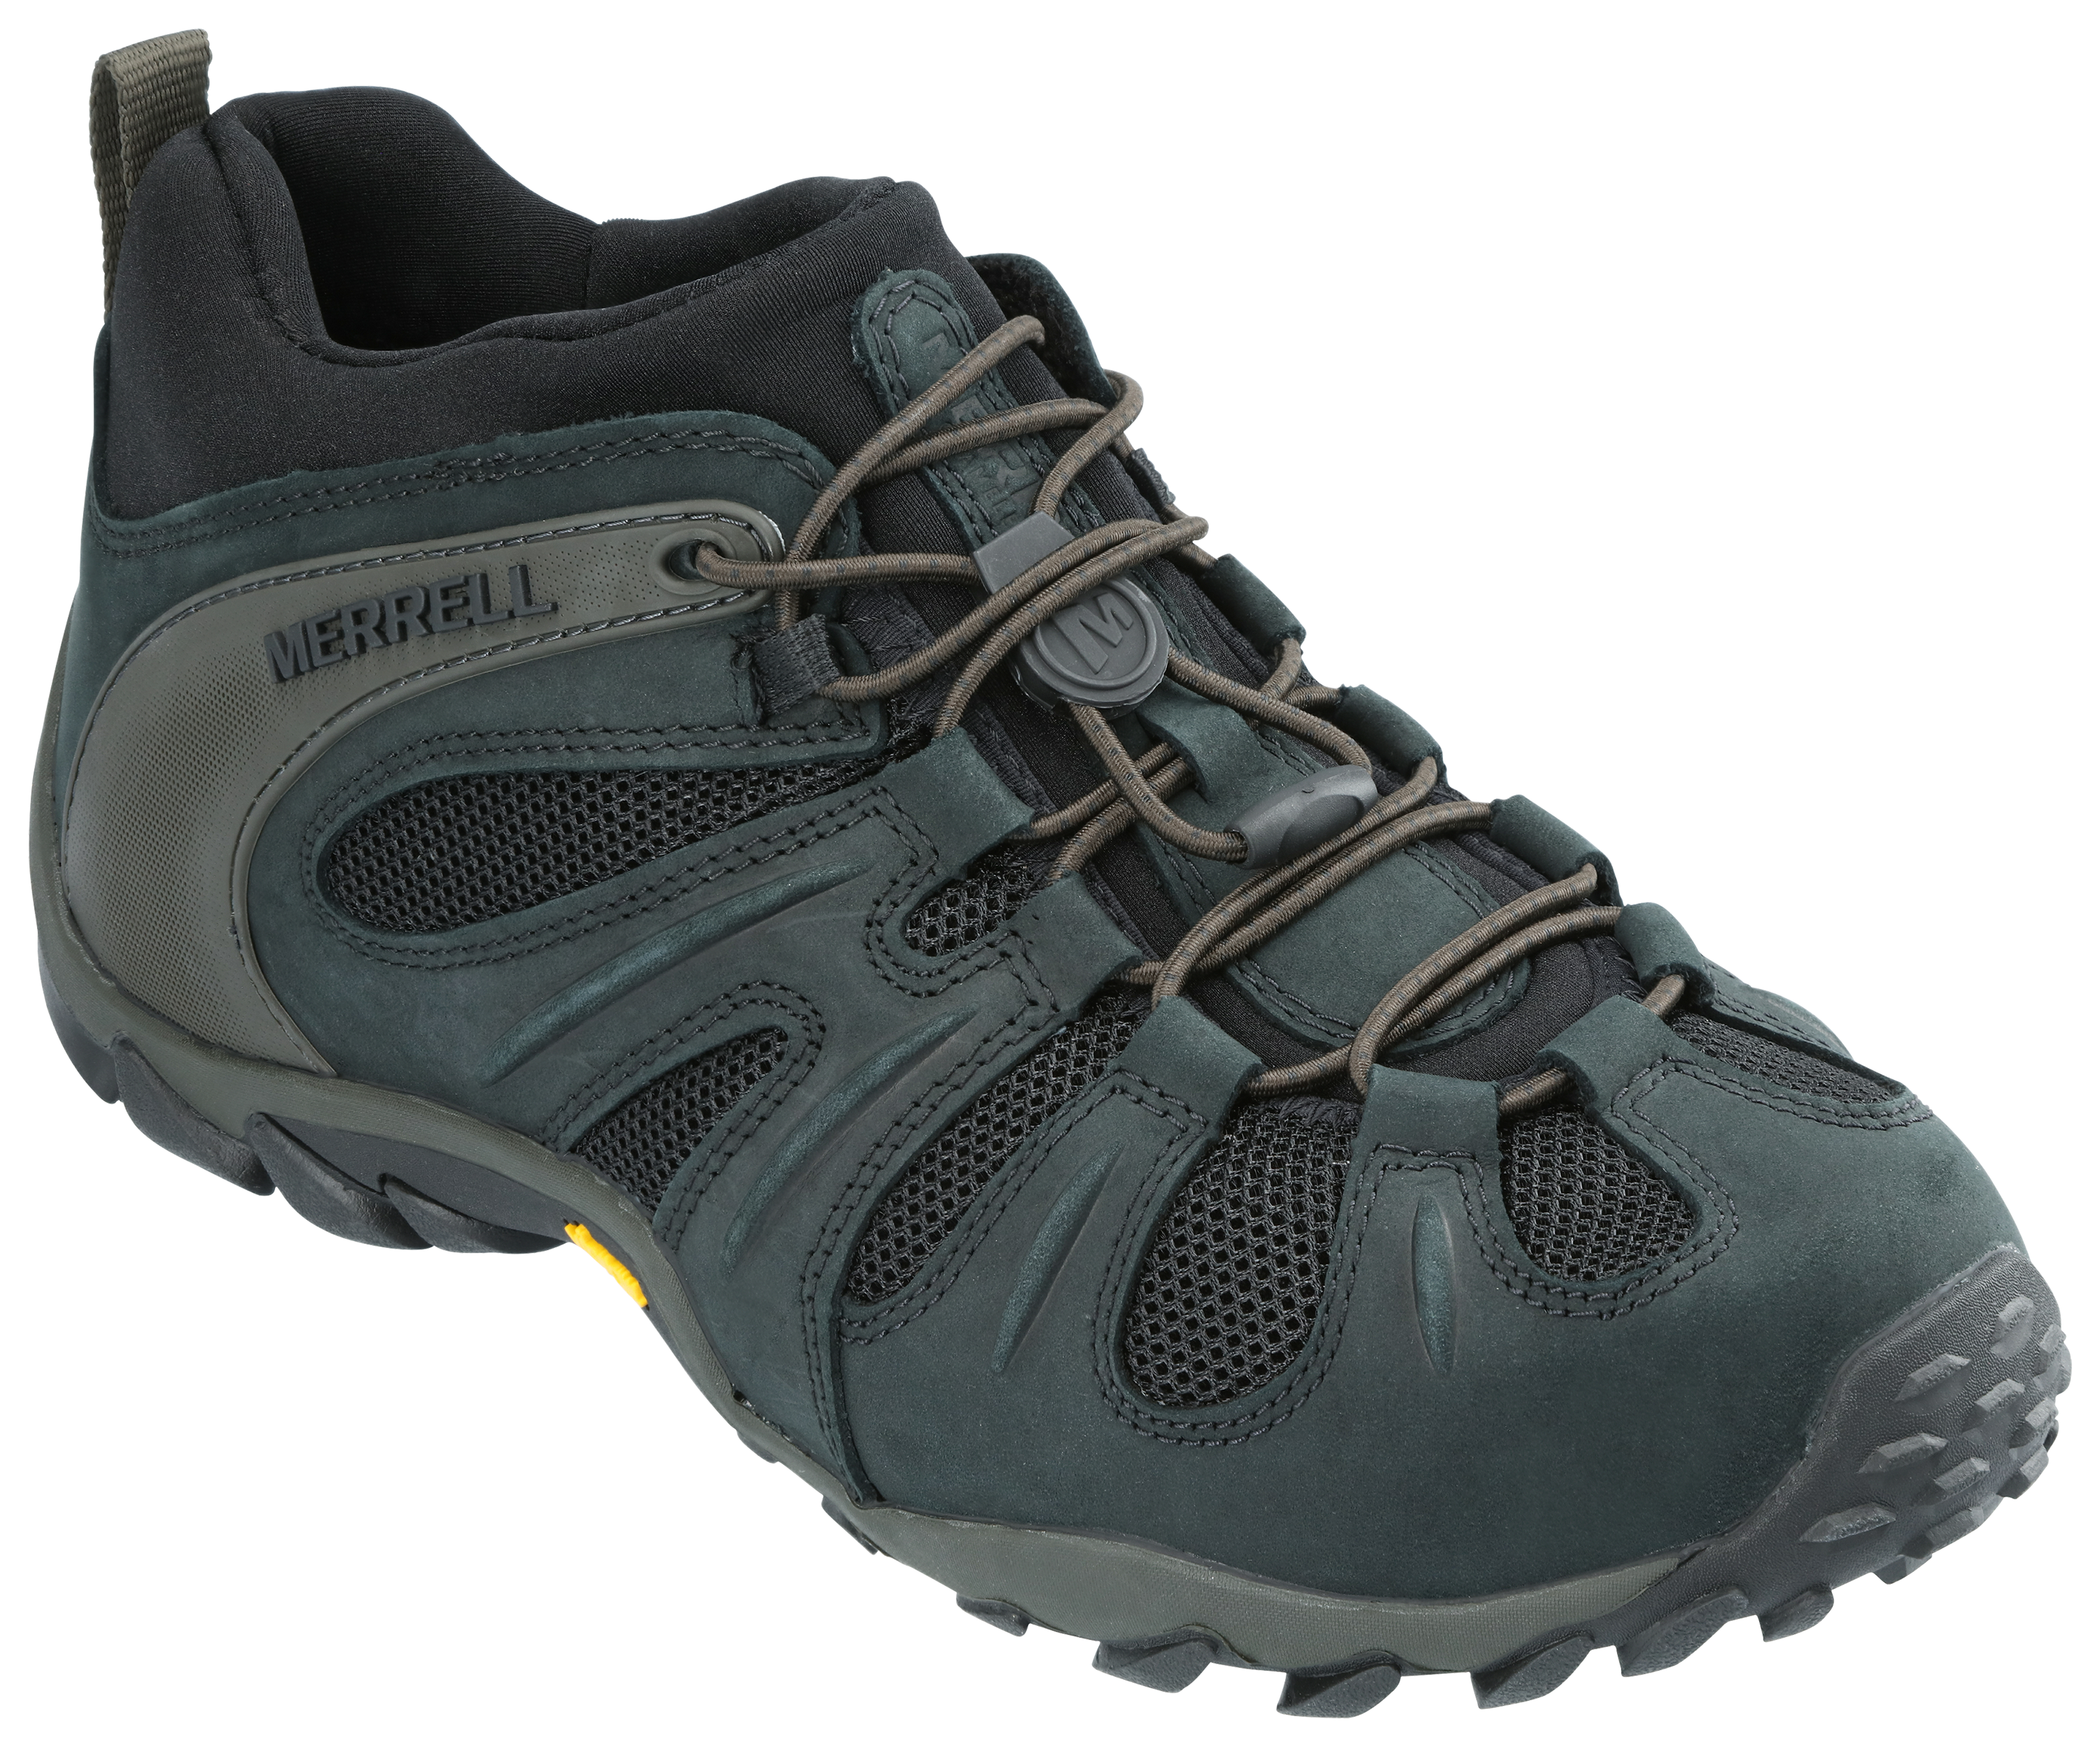 Merrell Chameleon 8 Stretch Hiking Boots for Men - Black - 8M